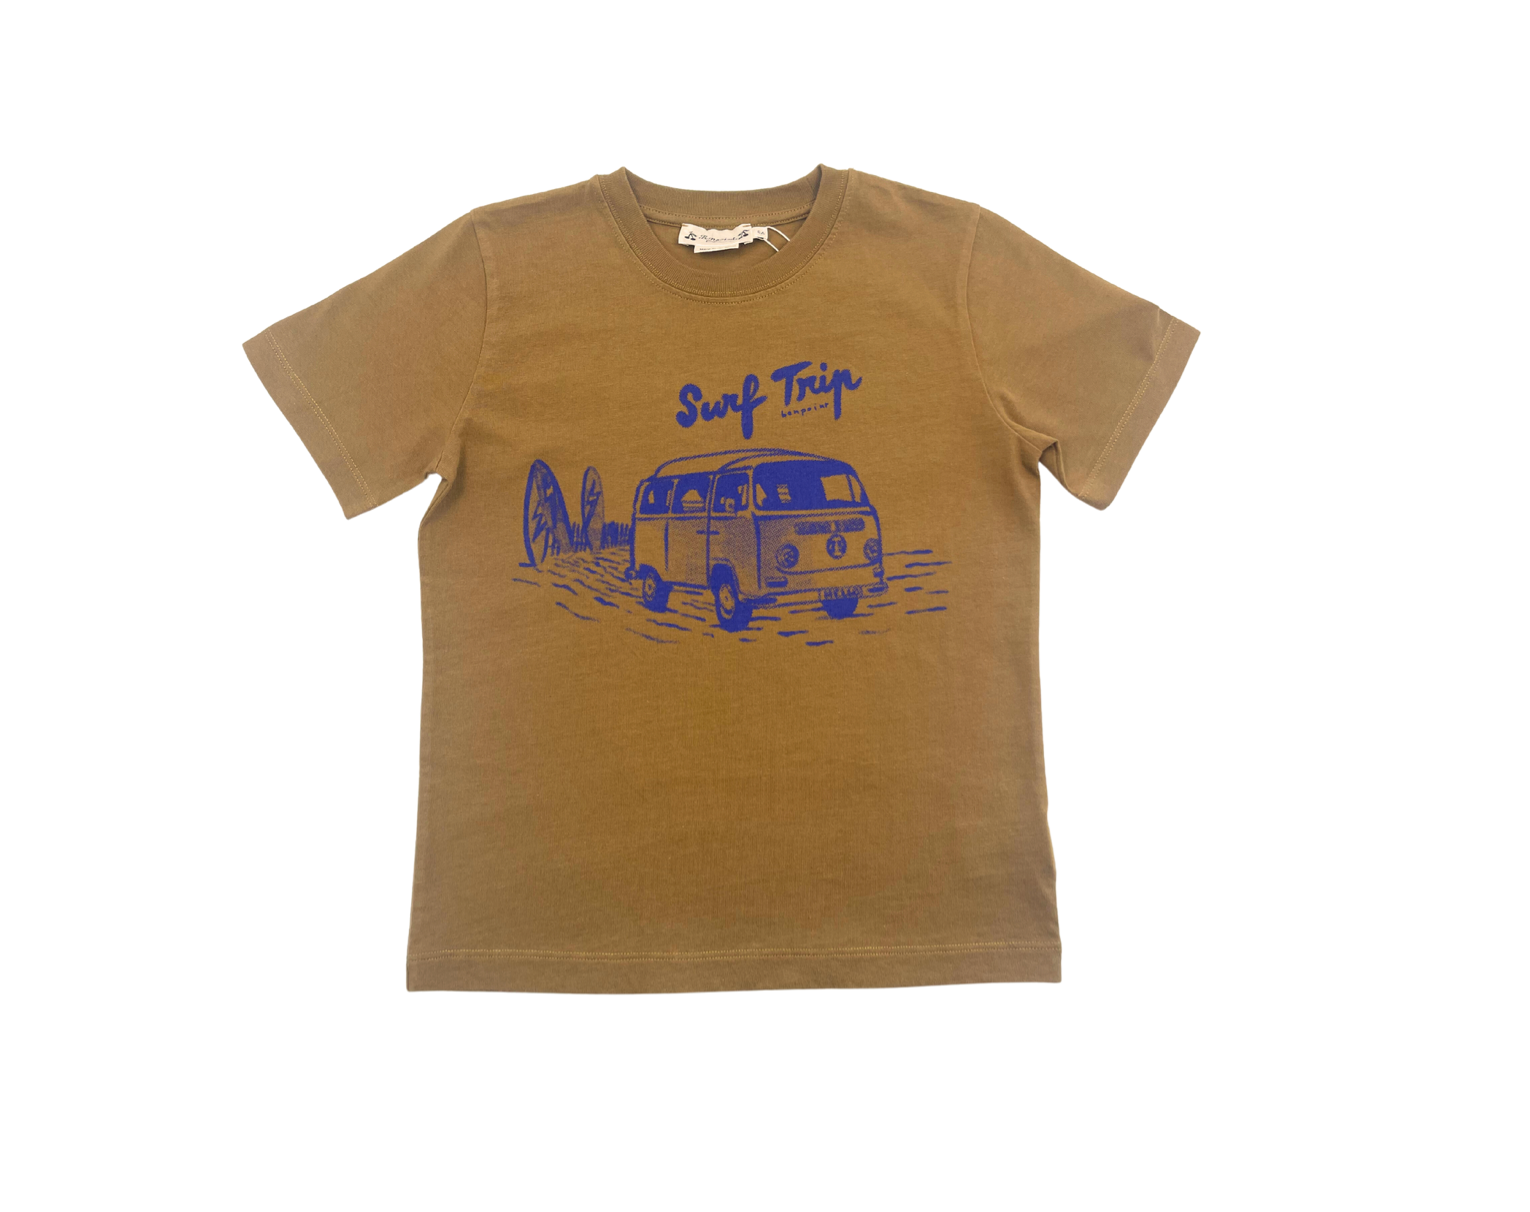 BONPOINT - T-shirt marron "Surf Trip" - 6 ans